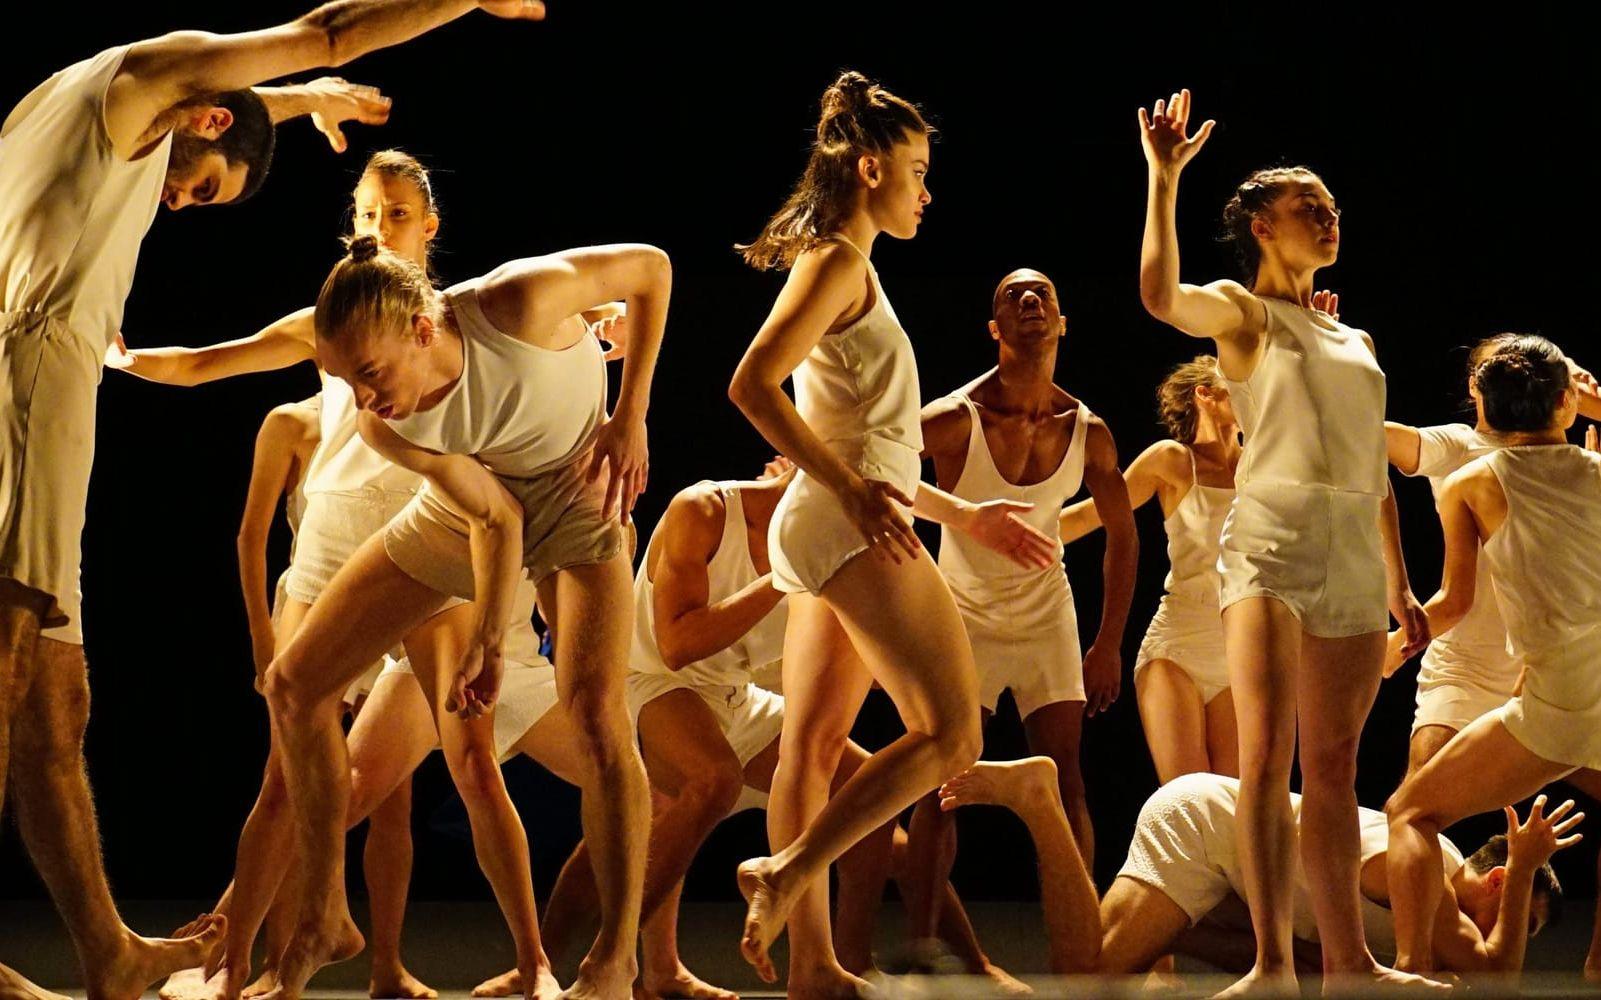 Batsheva dance company är baserat i Tel Aviv. Last work spelas även på Göteborgsoperan lördag, och blir en stark avslutning på en bra festival. Foto: Gadi Dagon